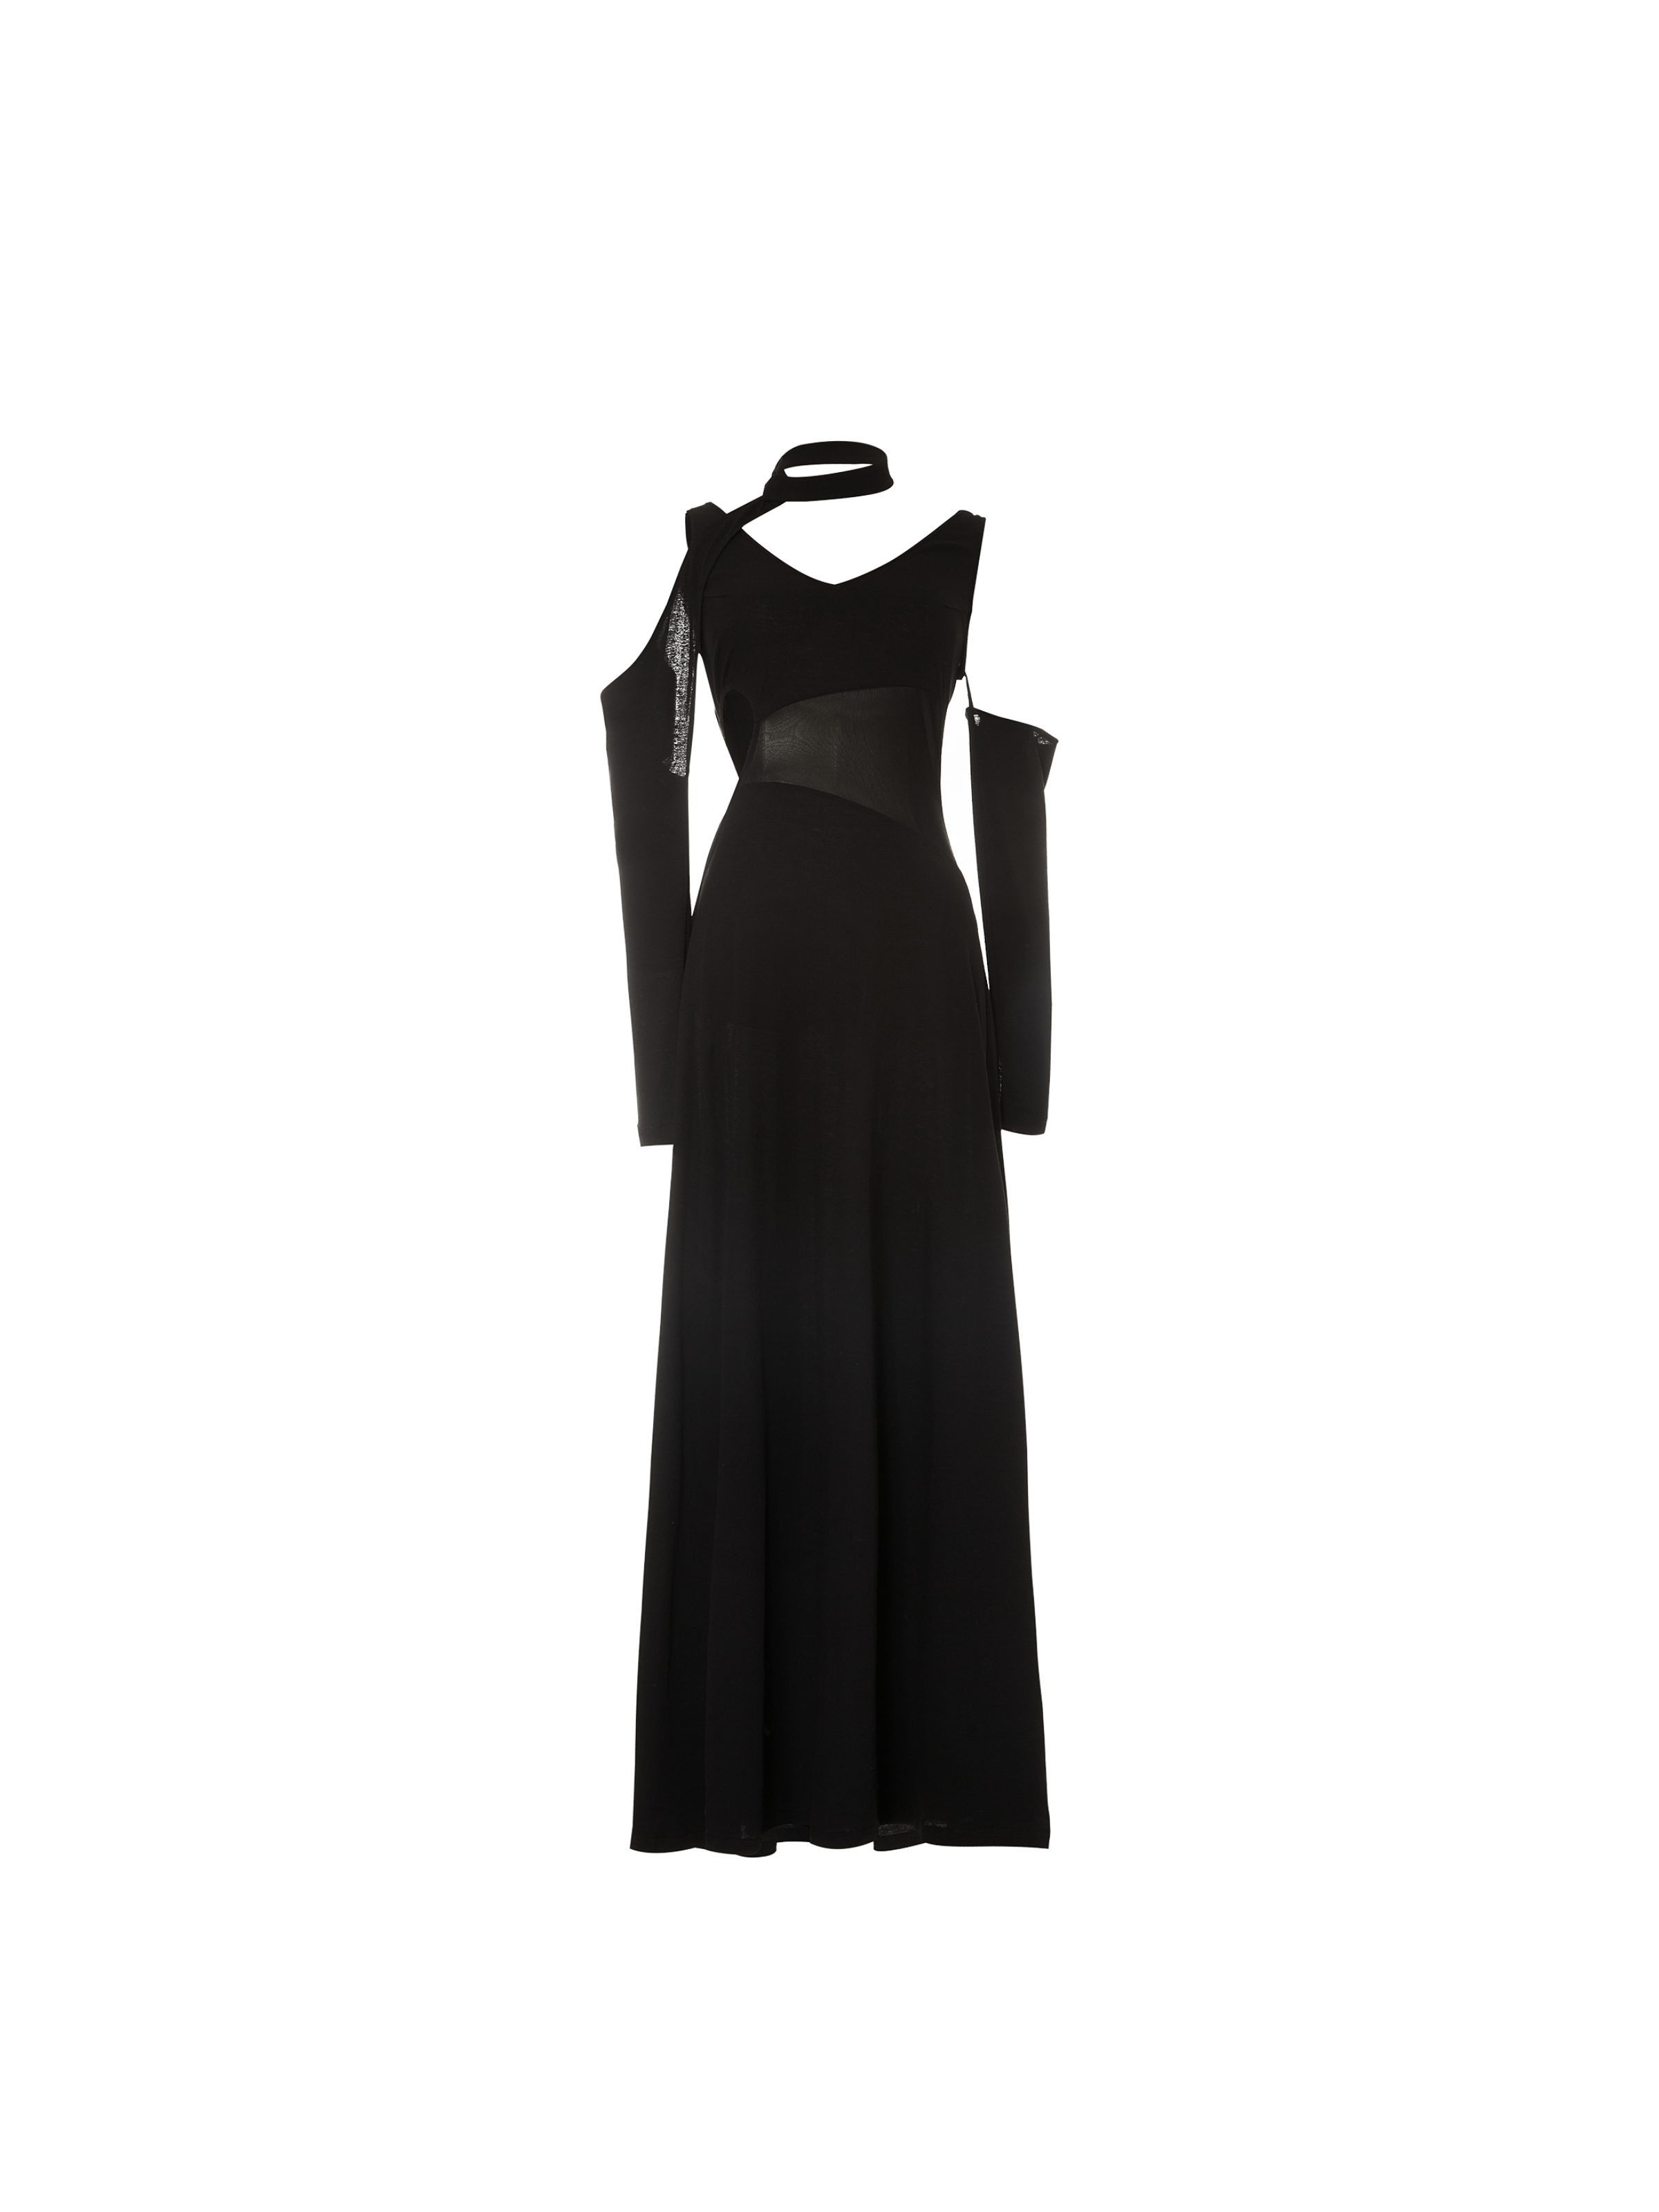 슬리브렛이 있는 블랙 투피스 드레스